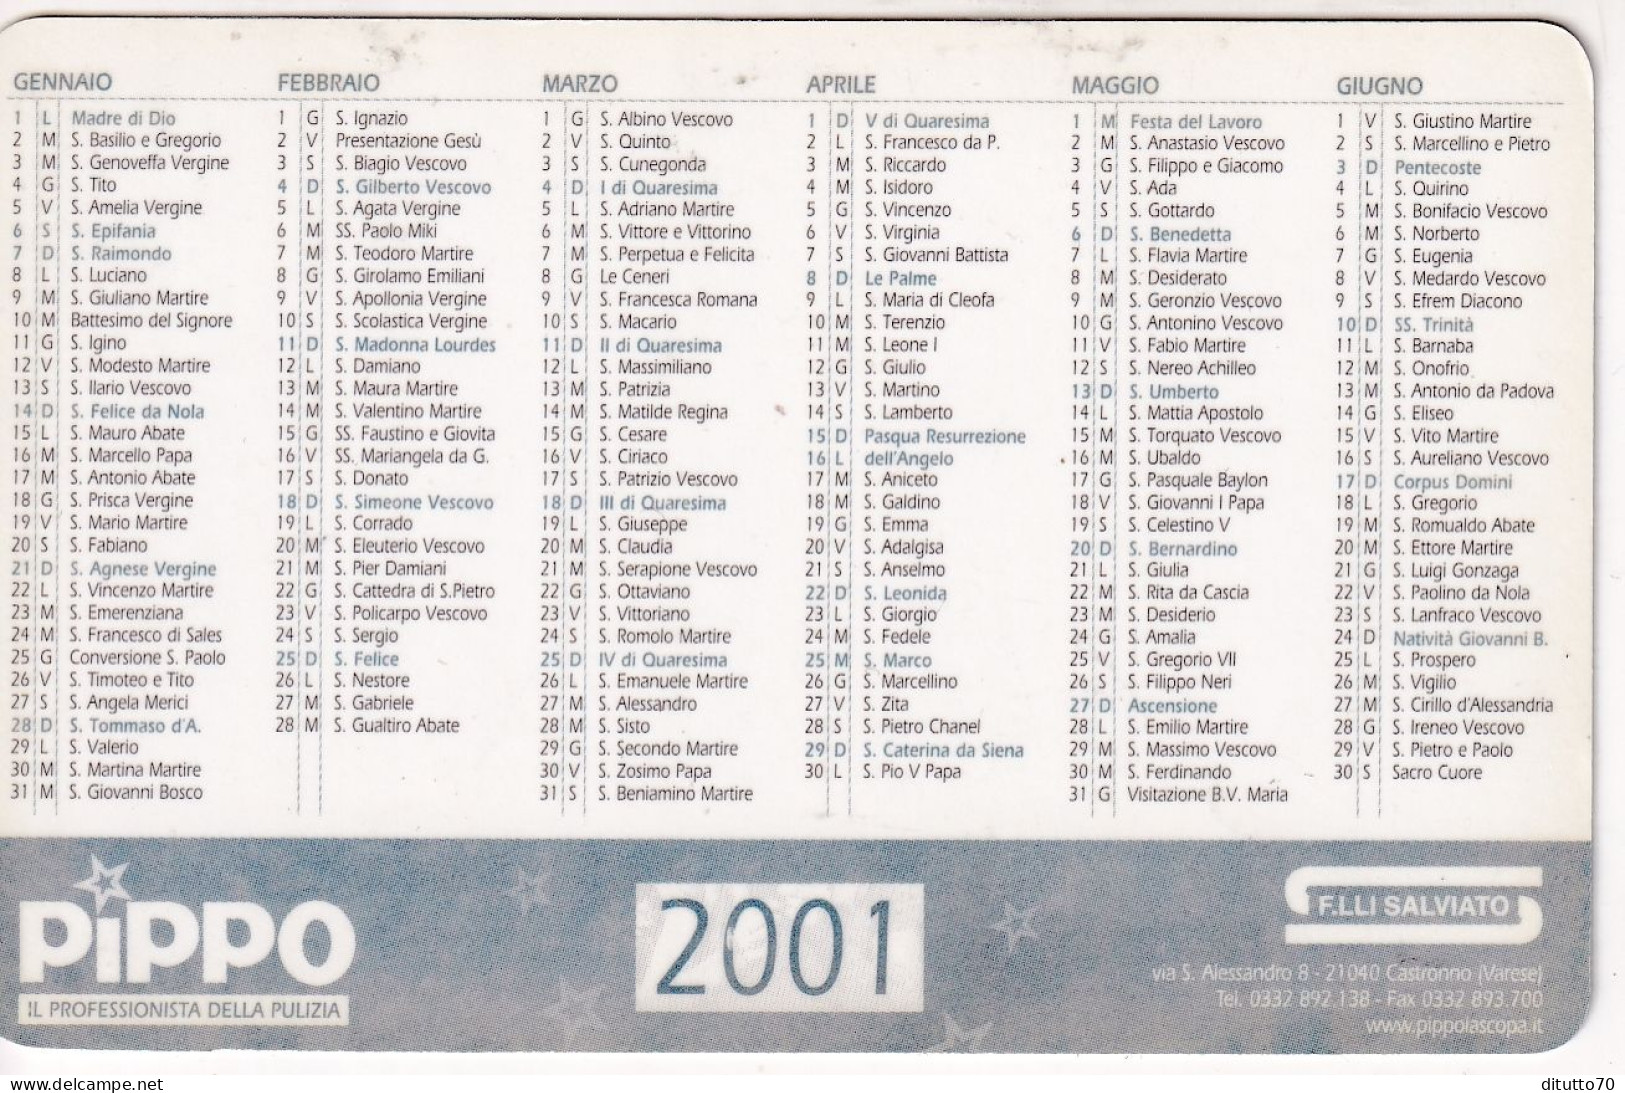 Calendarietto - Pippo - F.lli Salviato - Castrollo - Varese - Anno 2001 - Kleinformat : 2001-...